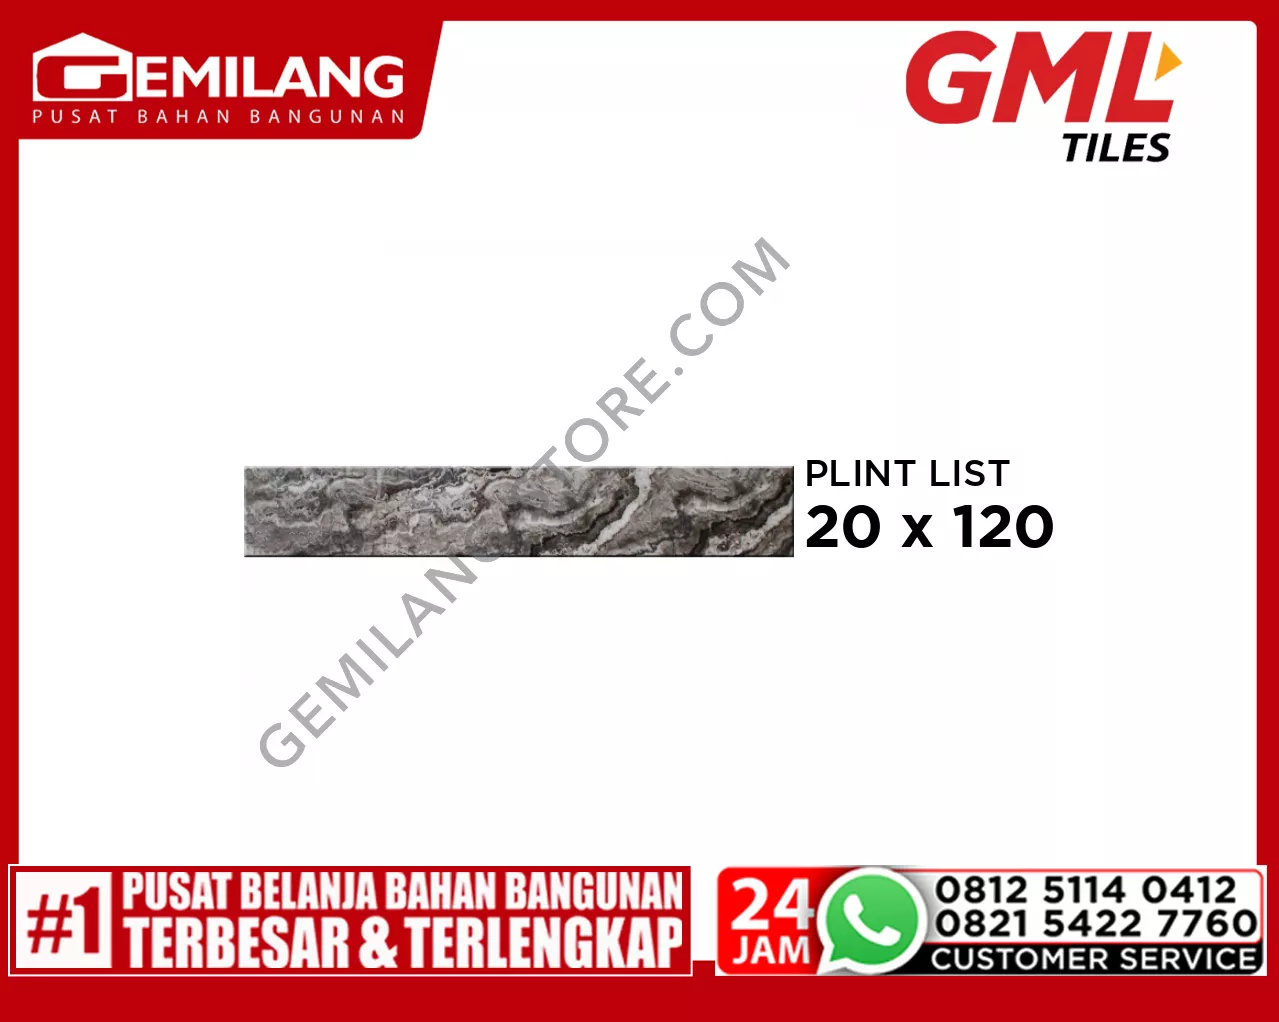 GML PLINT LIST GRANIT CUTTING DP 12014 20 x 120